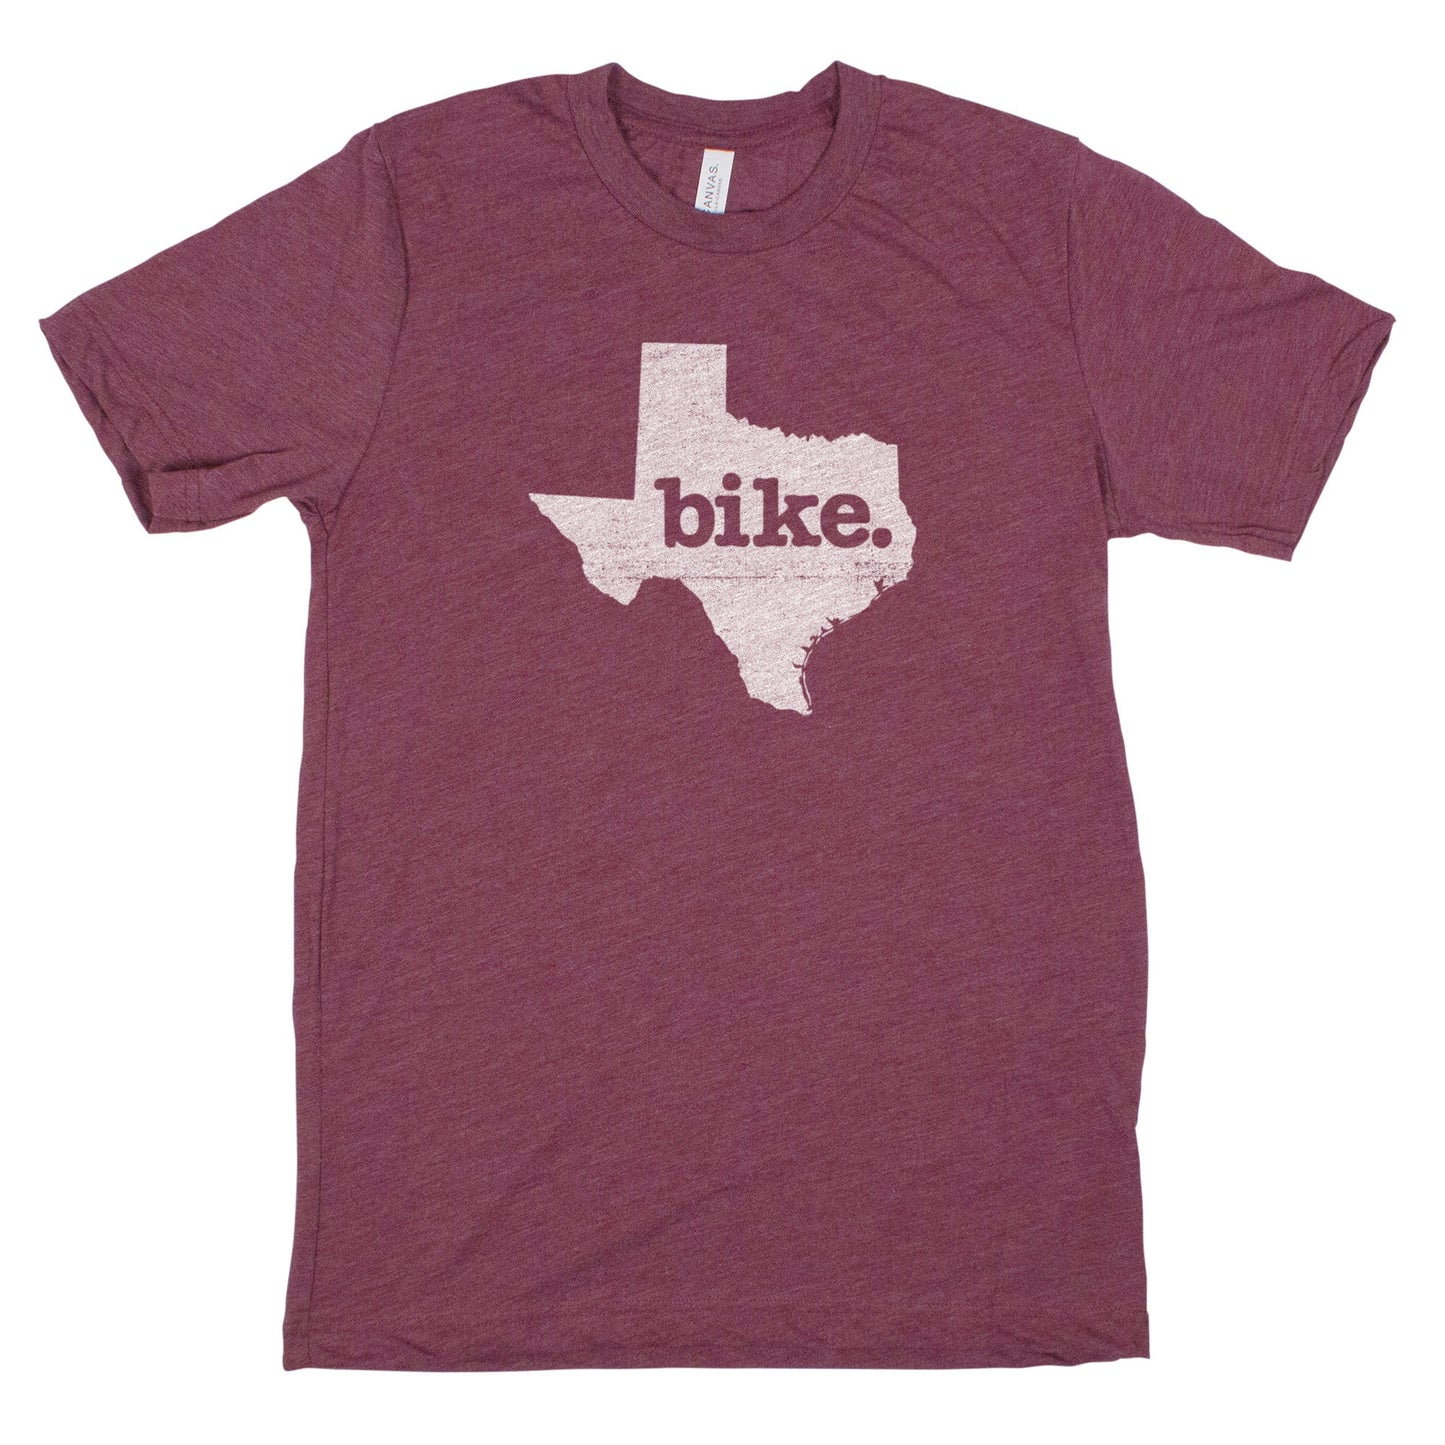 bike. Men's Unisex T-Shirt - Texas